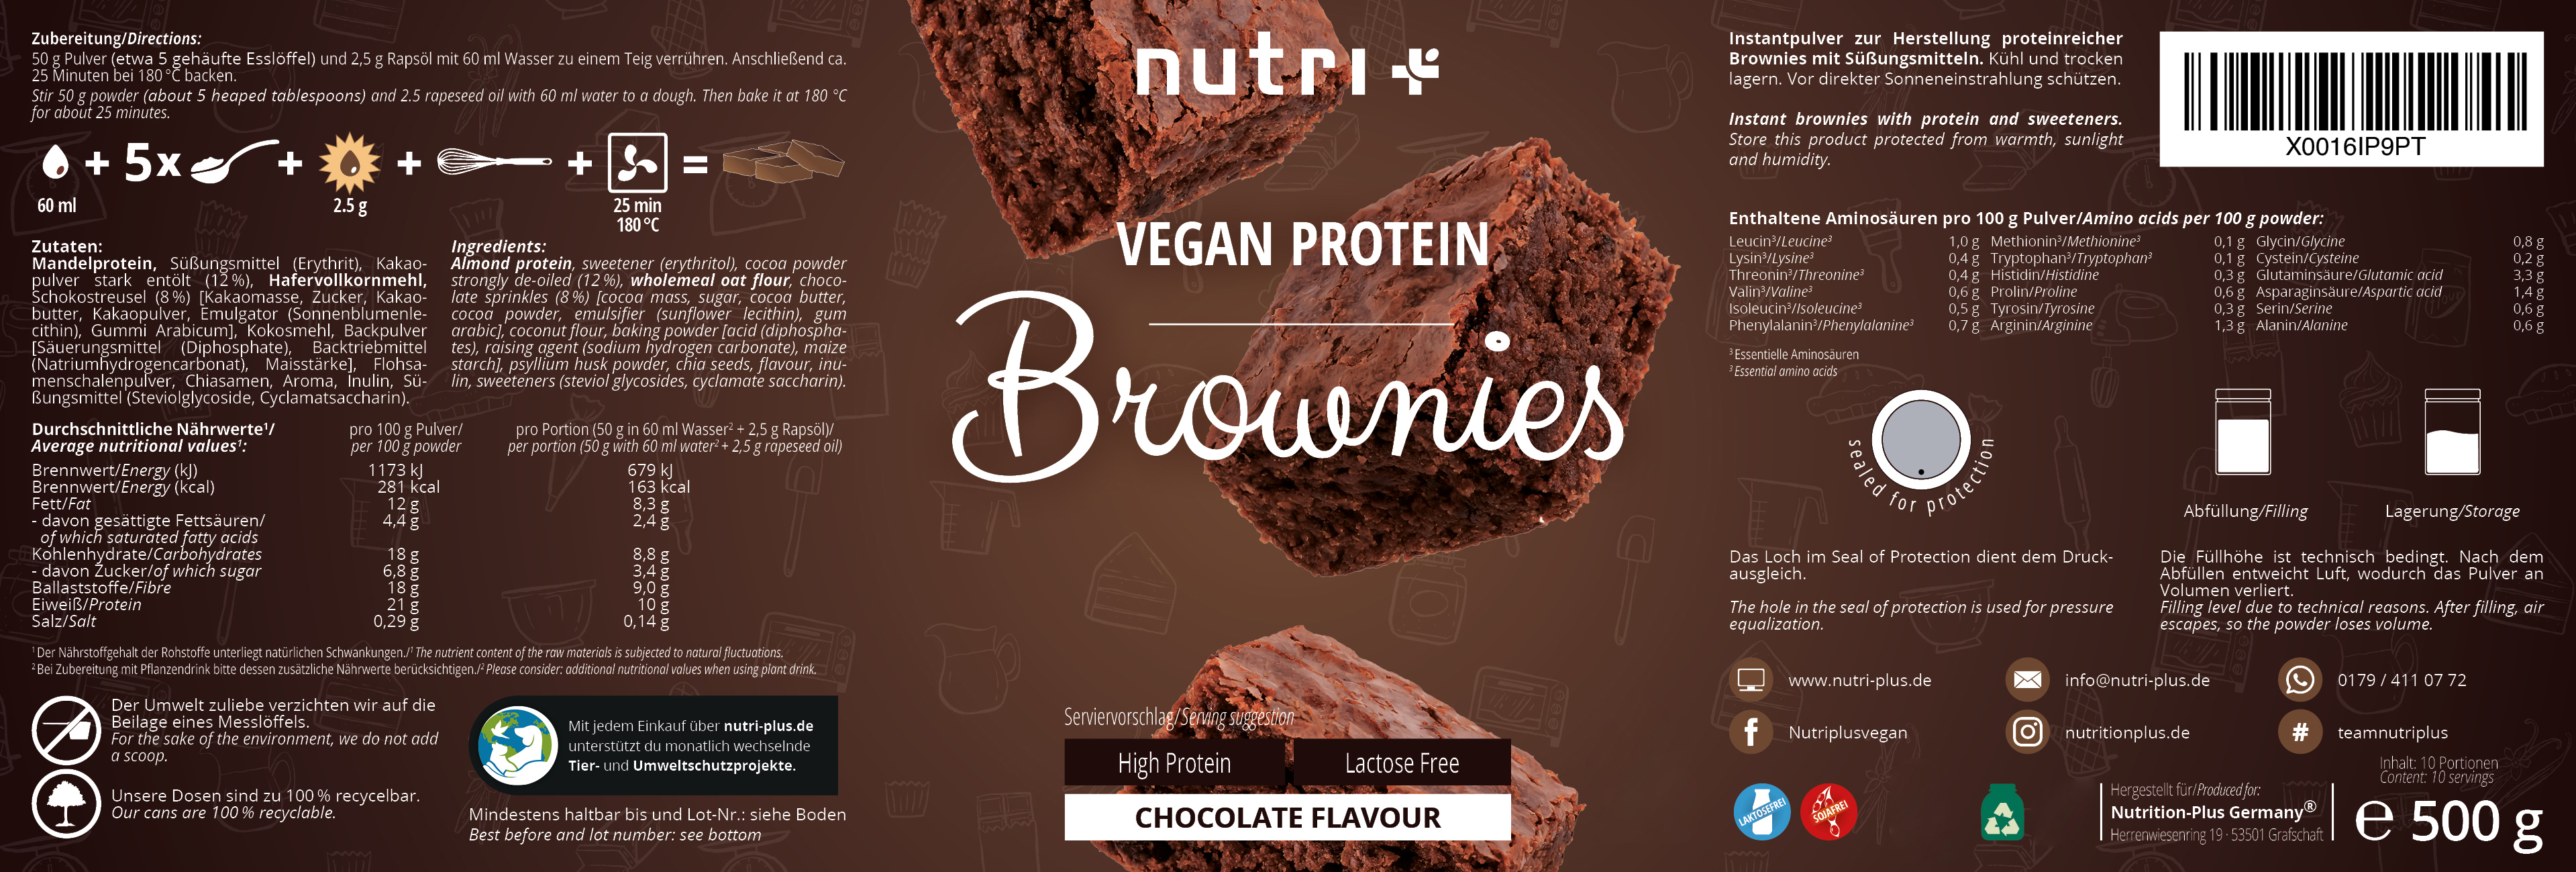 Vegan Protein Brownies 500g